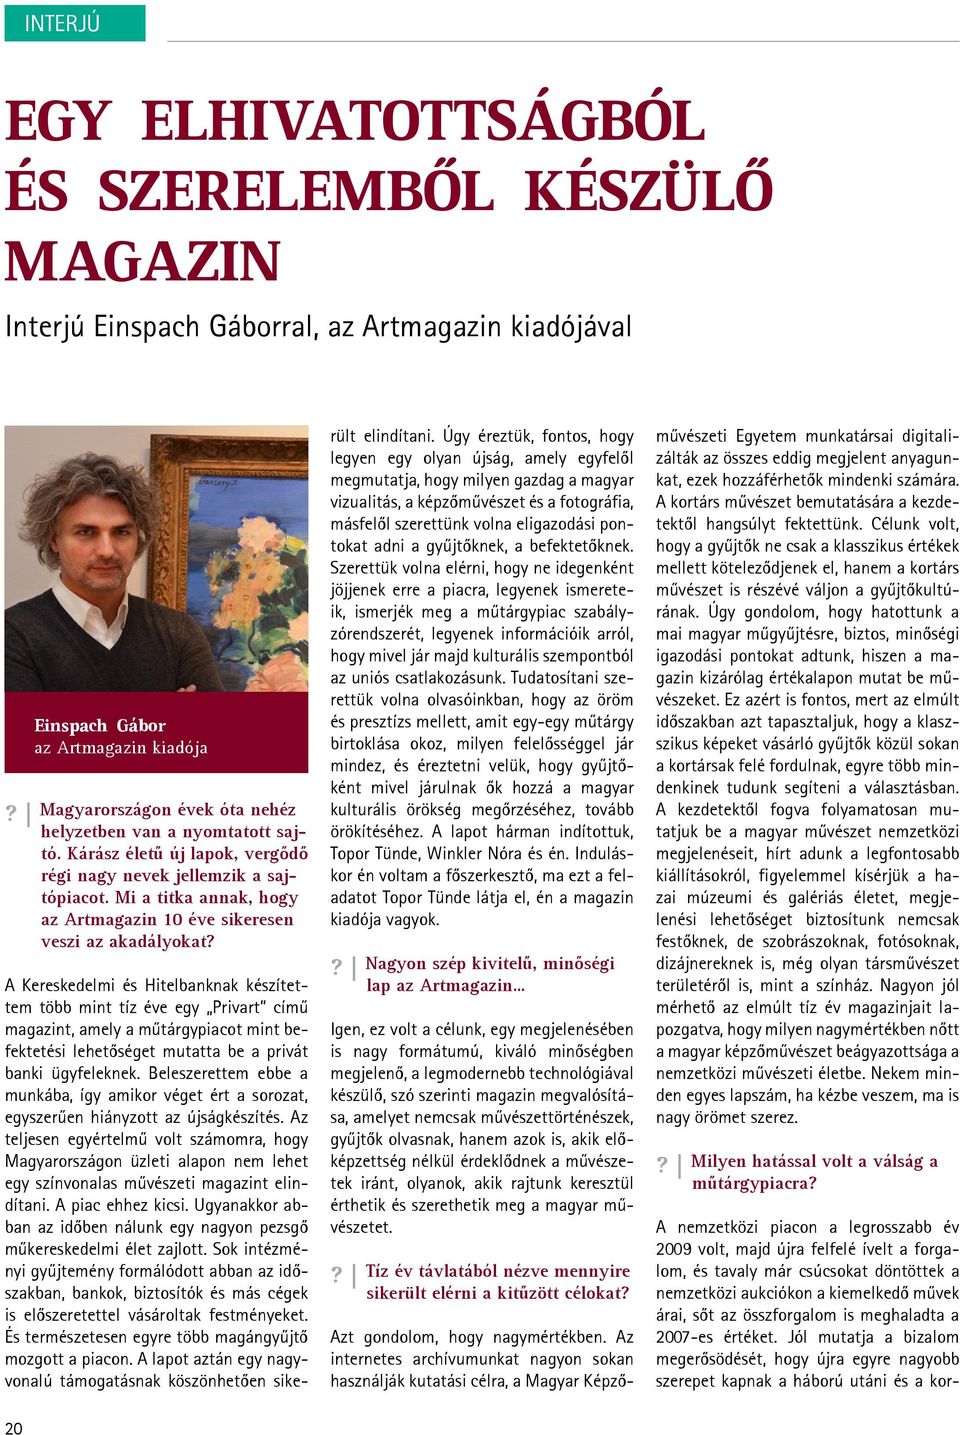 20 Einspach Gábor az Artmagazin kiadója A Kereskedelmi és Hitelbanknak készítettem több mint tíz éve egy Privart című magazint, amely a műtárgypiacot mint befektetési lehetőséget mutatta be a privát